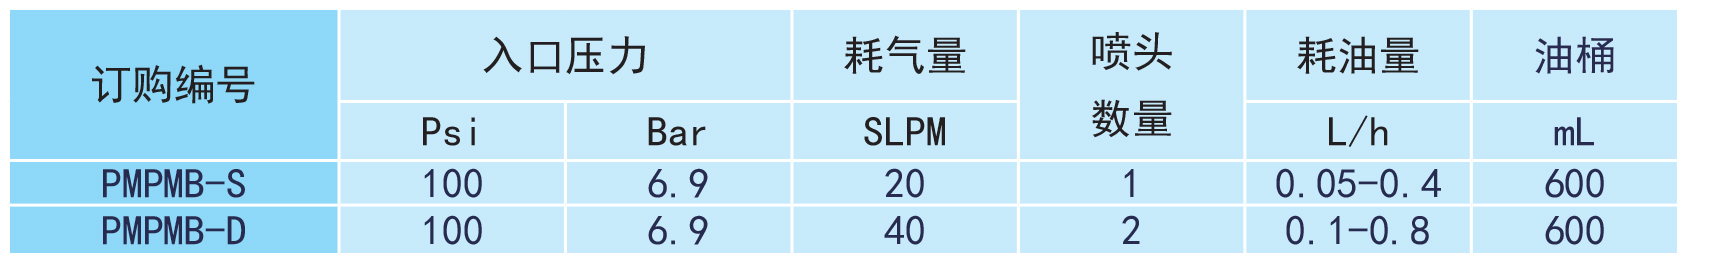 PMPMB微量润滑系统参数